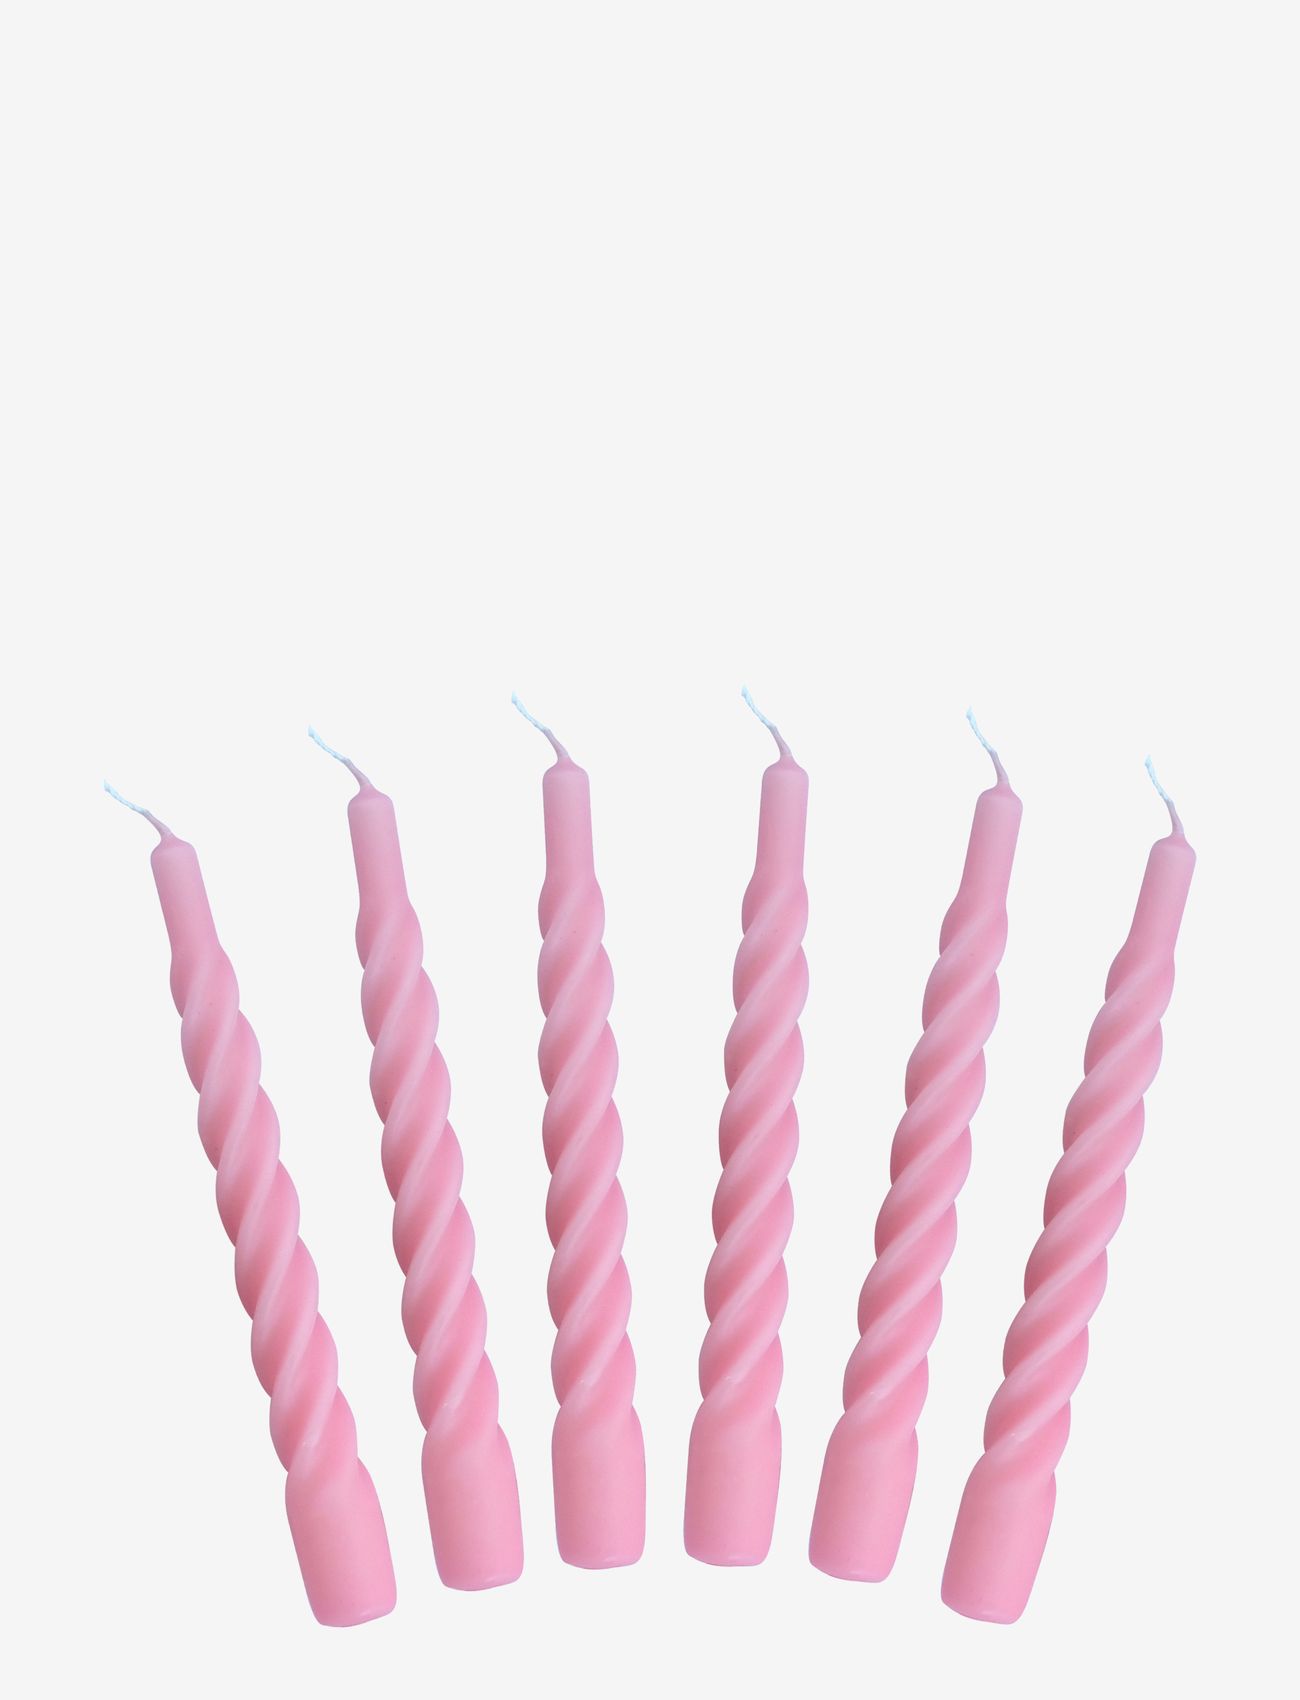 Kunstindustrien - Candles with a Twist - Matt - lowest prices - pink - 0